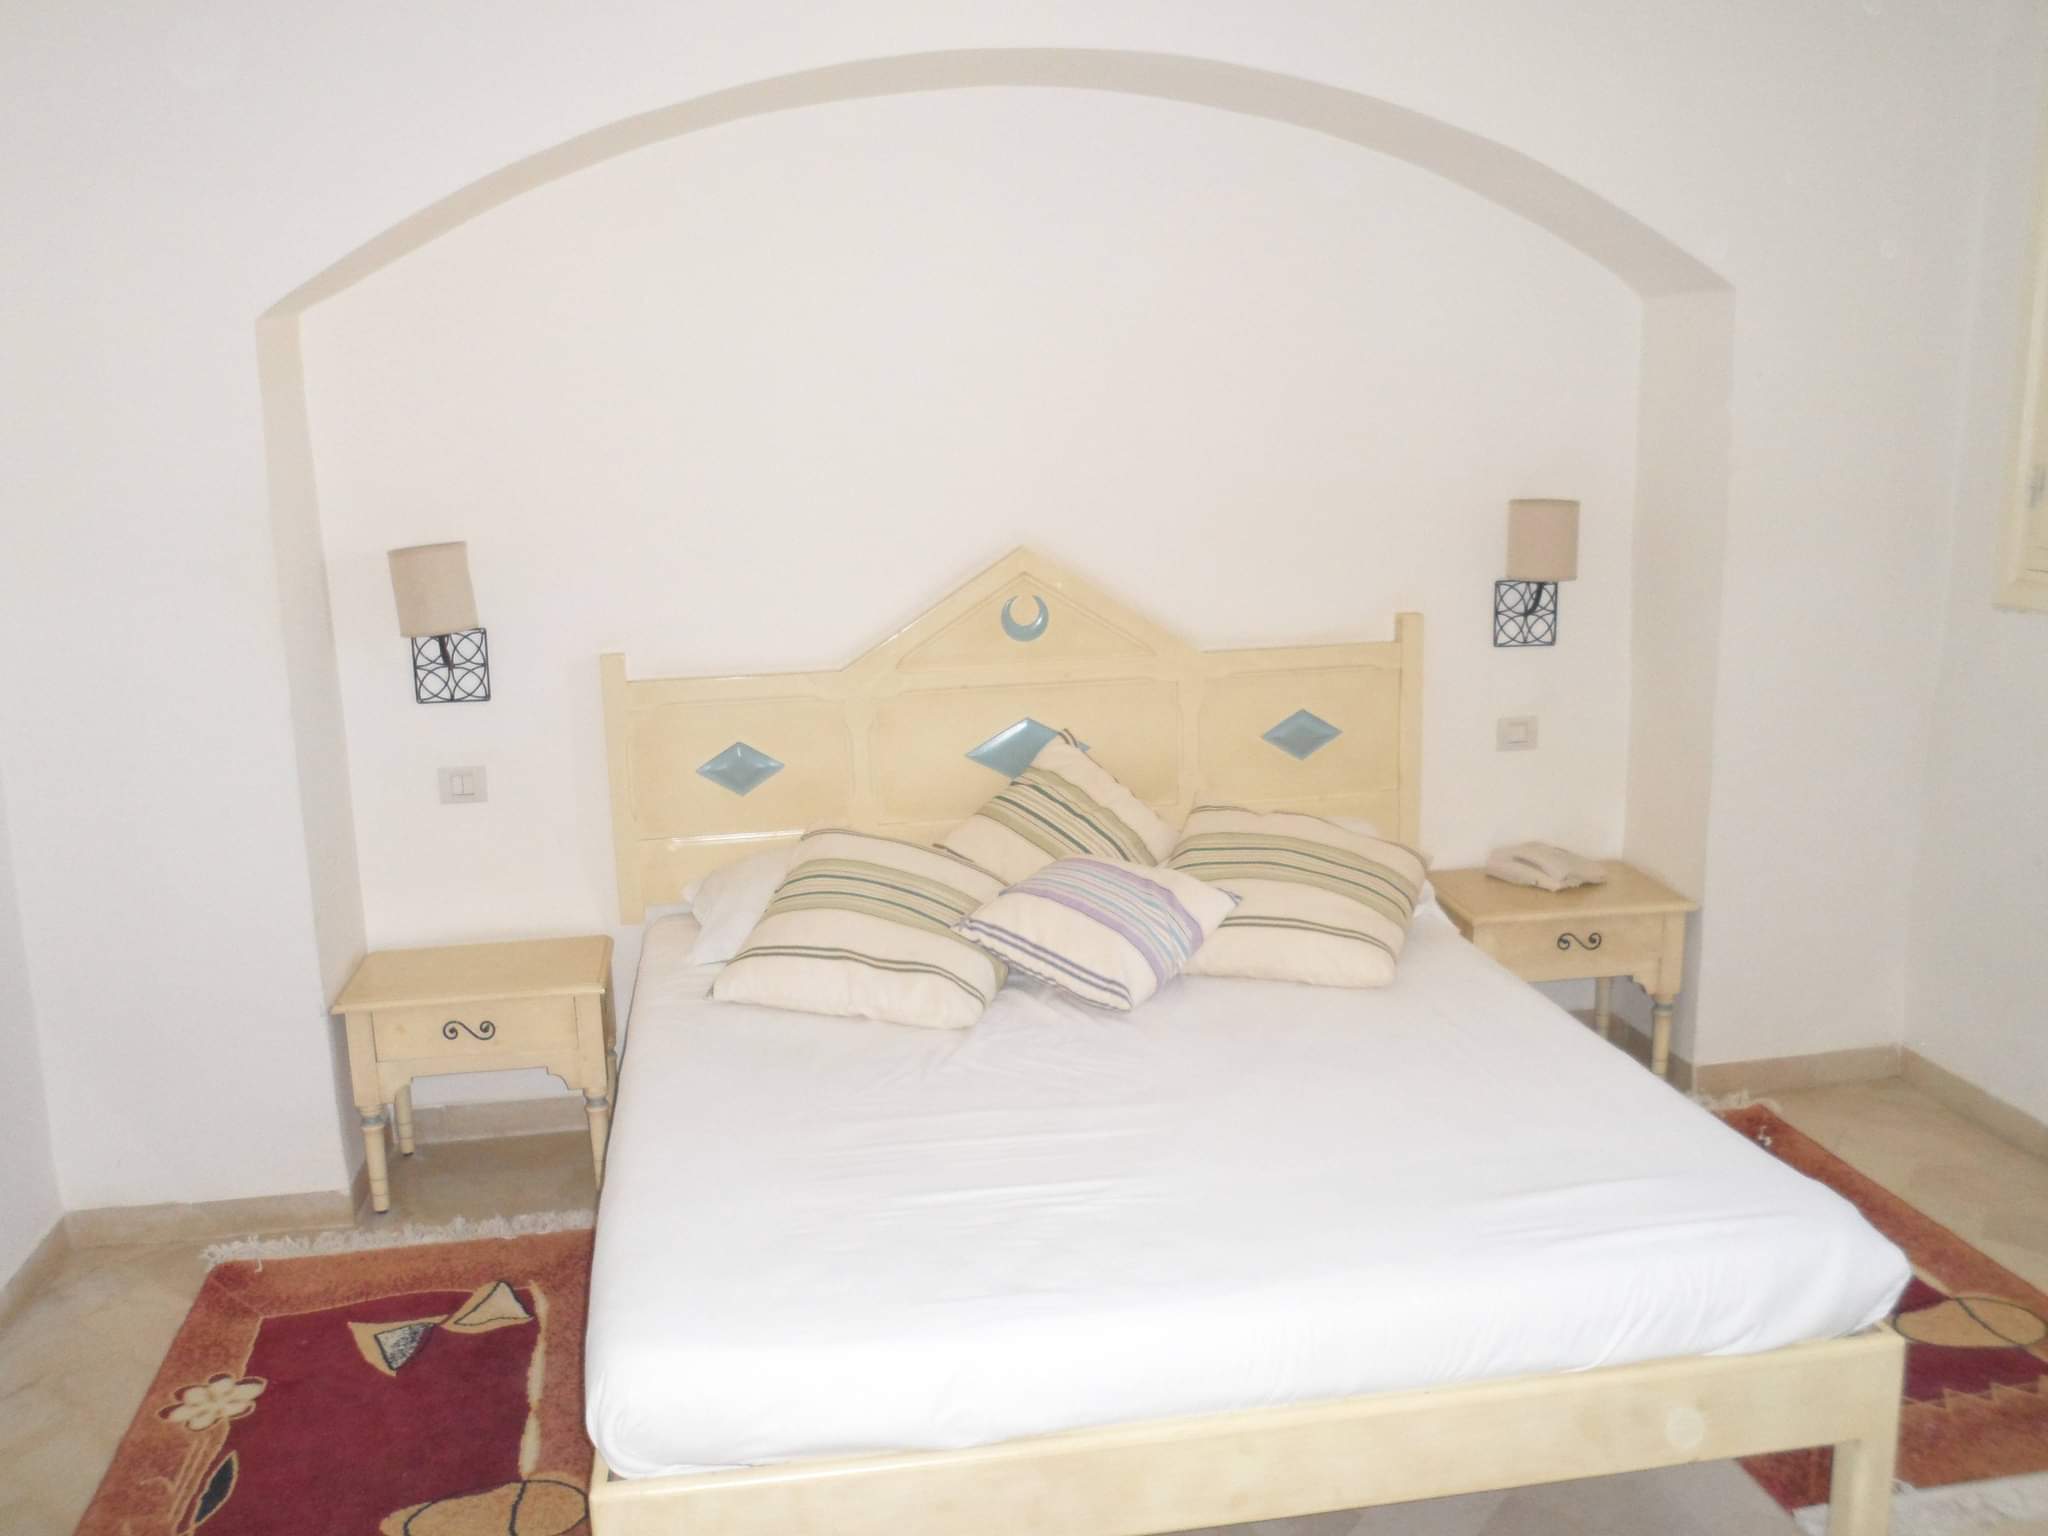 Tunisie Ariana Ville Cite Ennasr 2 Location vacances Appart. 2 pièces S1 meublé bien équiper la nuitée 90dt